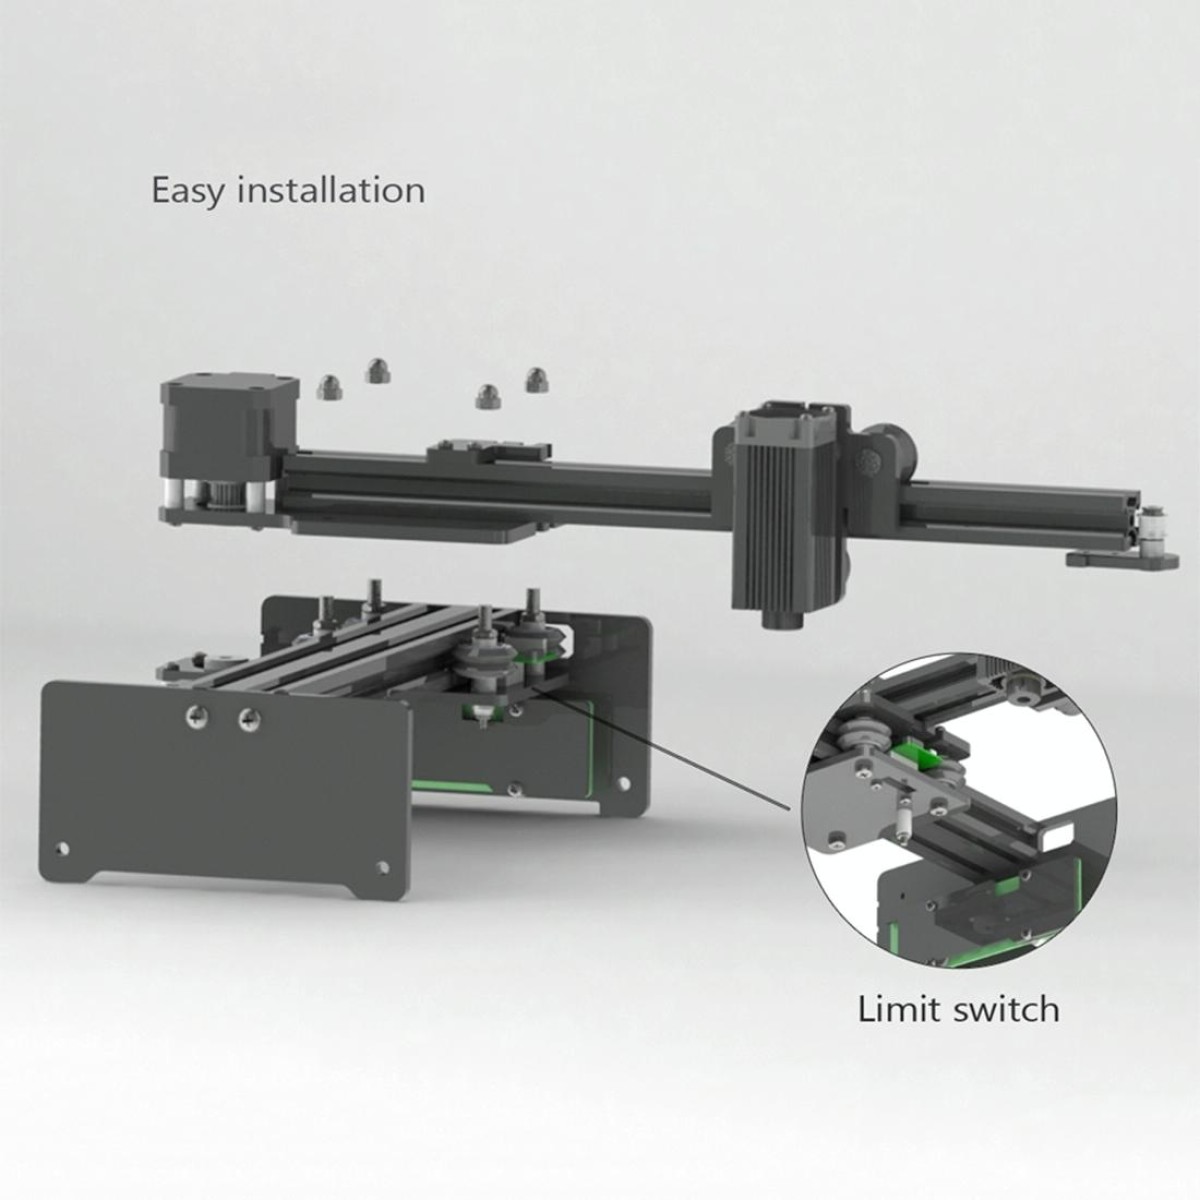 NEJE 3 USB DIY Laser Engraving Machine